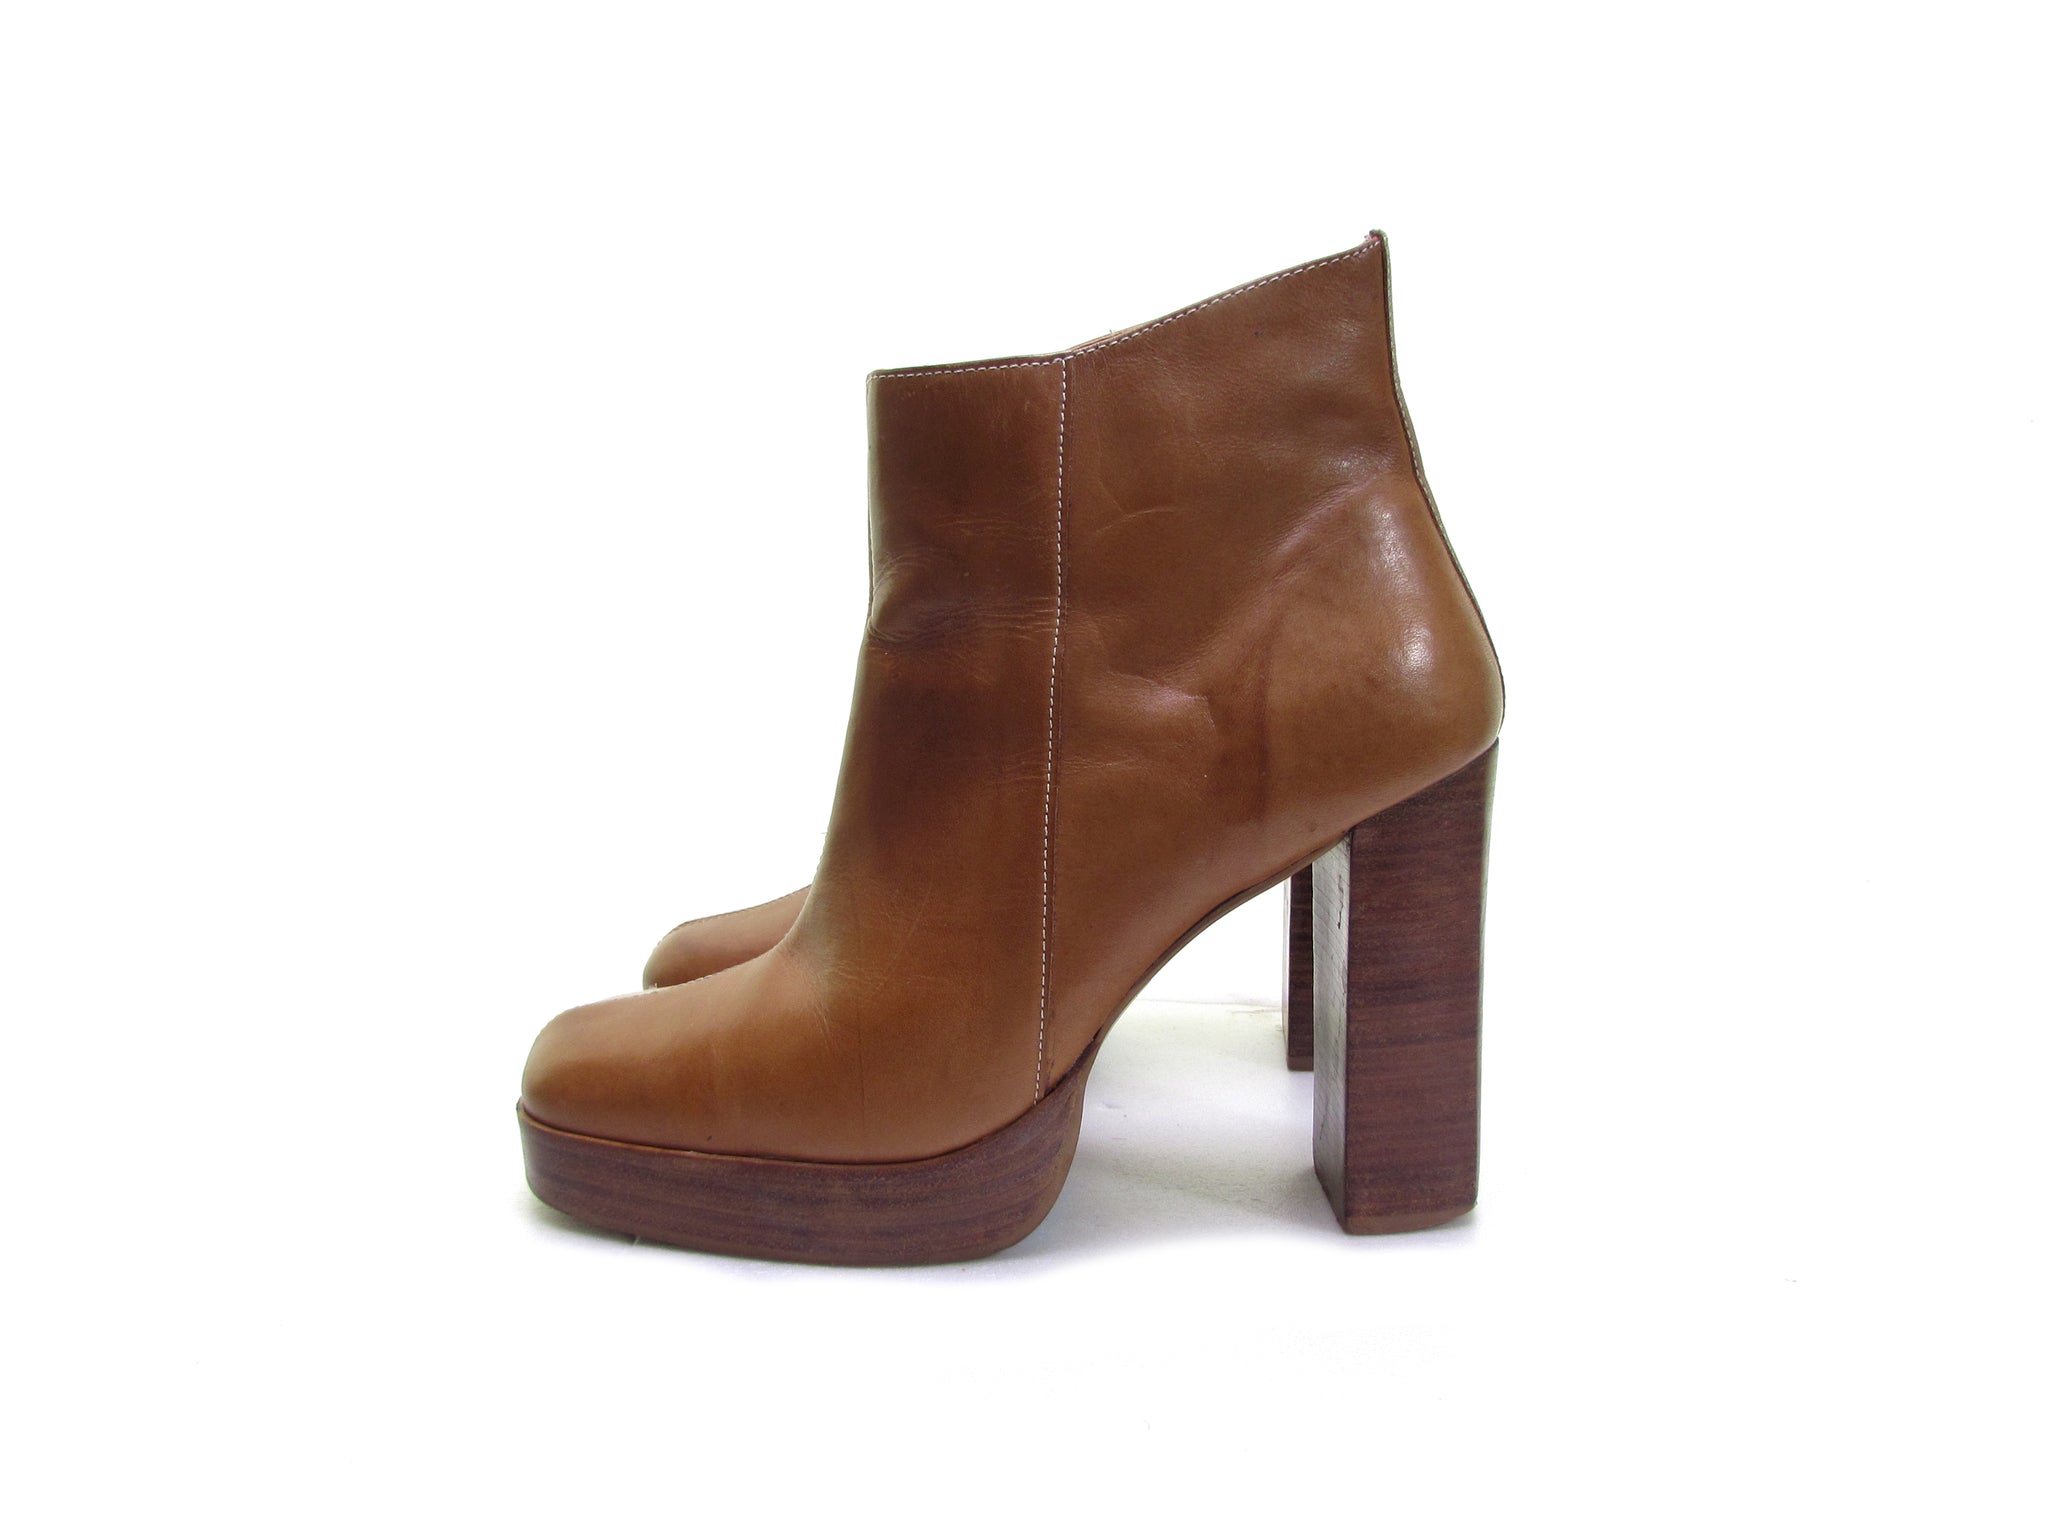 Cheap Heeled Boots - Women's High Heeled Boots Sale| Shoe-Shop.com